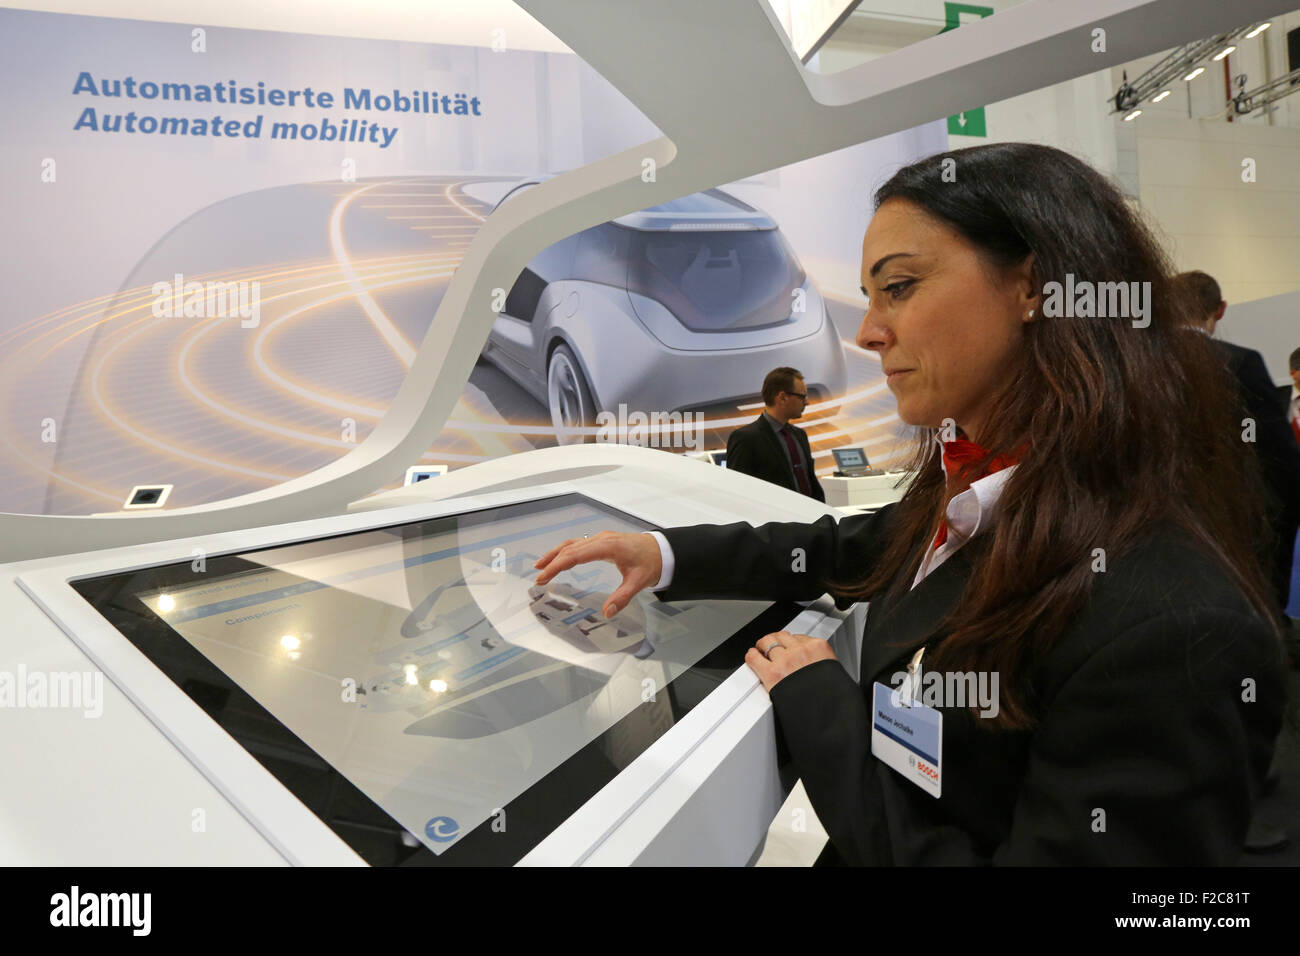 Frankfurt/M, 16.09.2015 - Connected Mobilitätssystem auf dem BOSCH-Stand auf der 66. internationalen Motor Show IAA 2015 (Internationale Automobil Ausstellung, IAA) in Frankfurt/Main, Deutschland Stockfoto